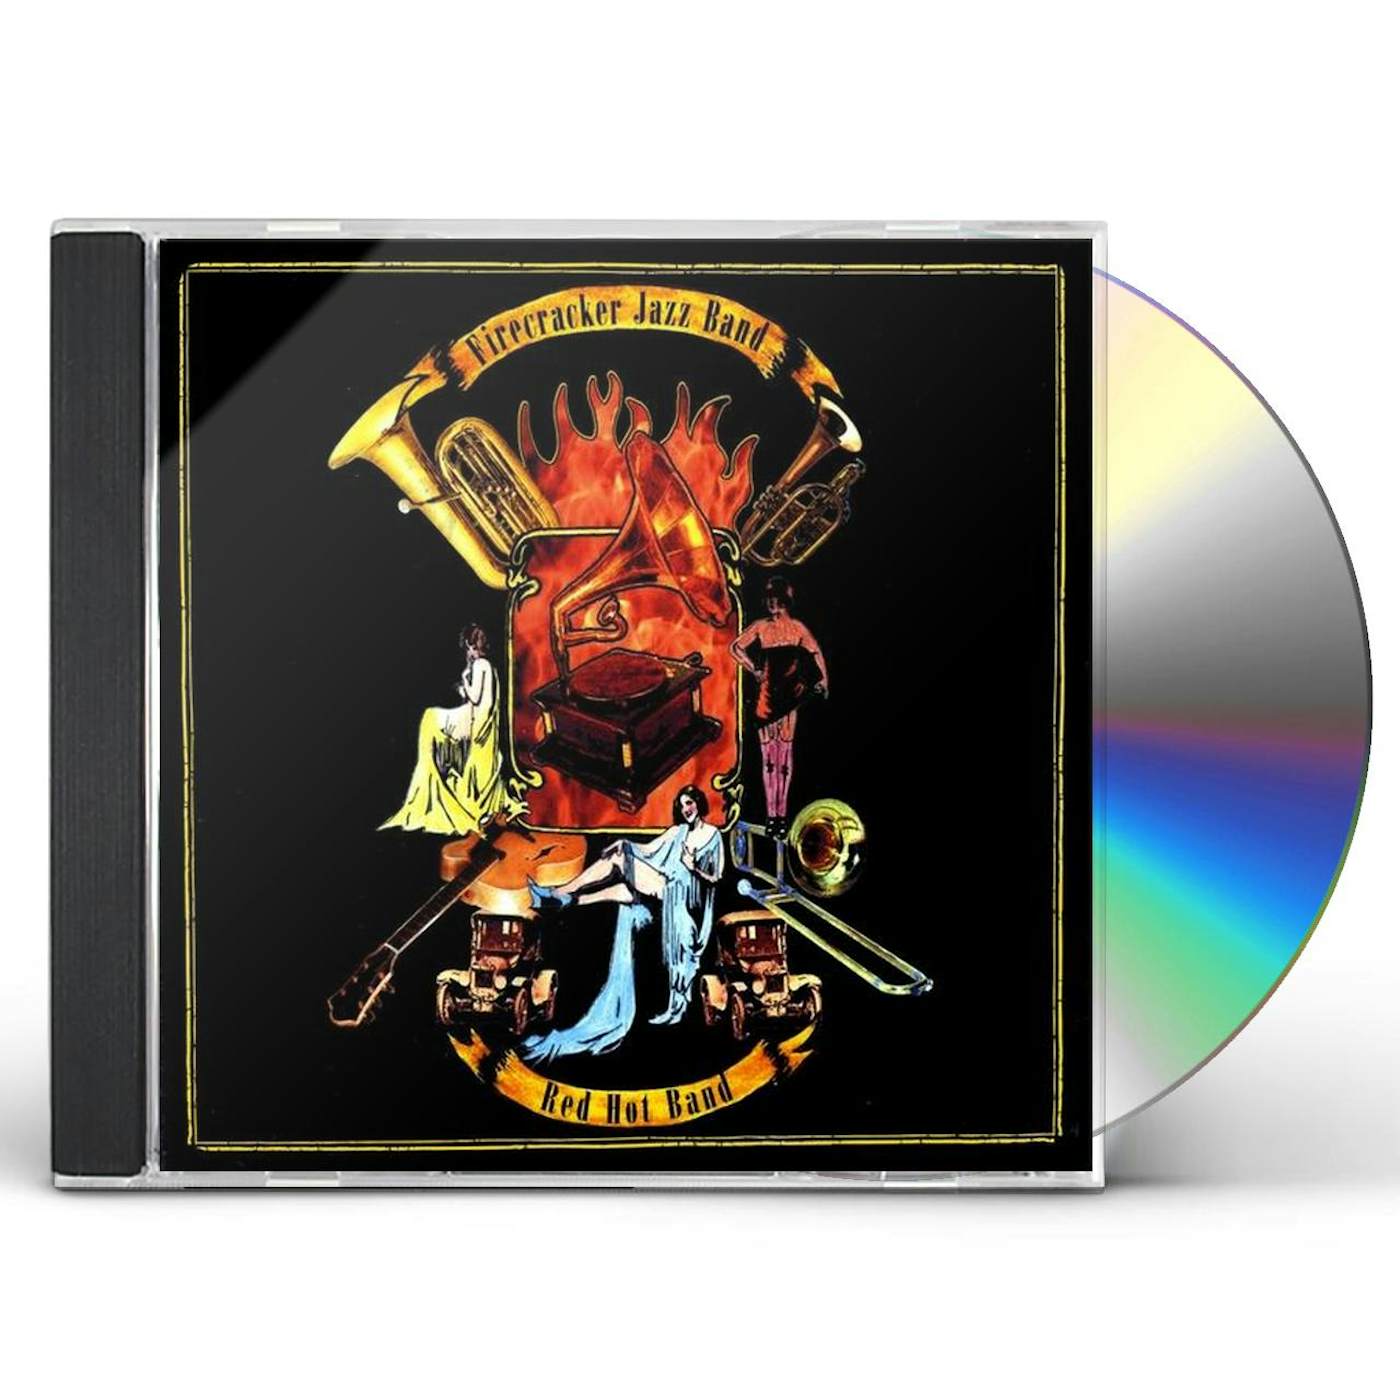 Firecracker Jazz Band RED HOT BAND CD